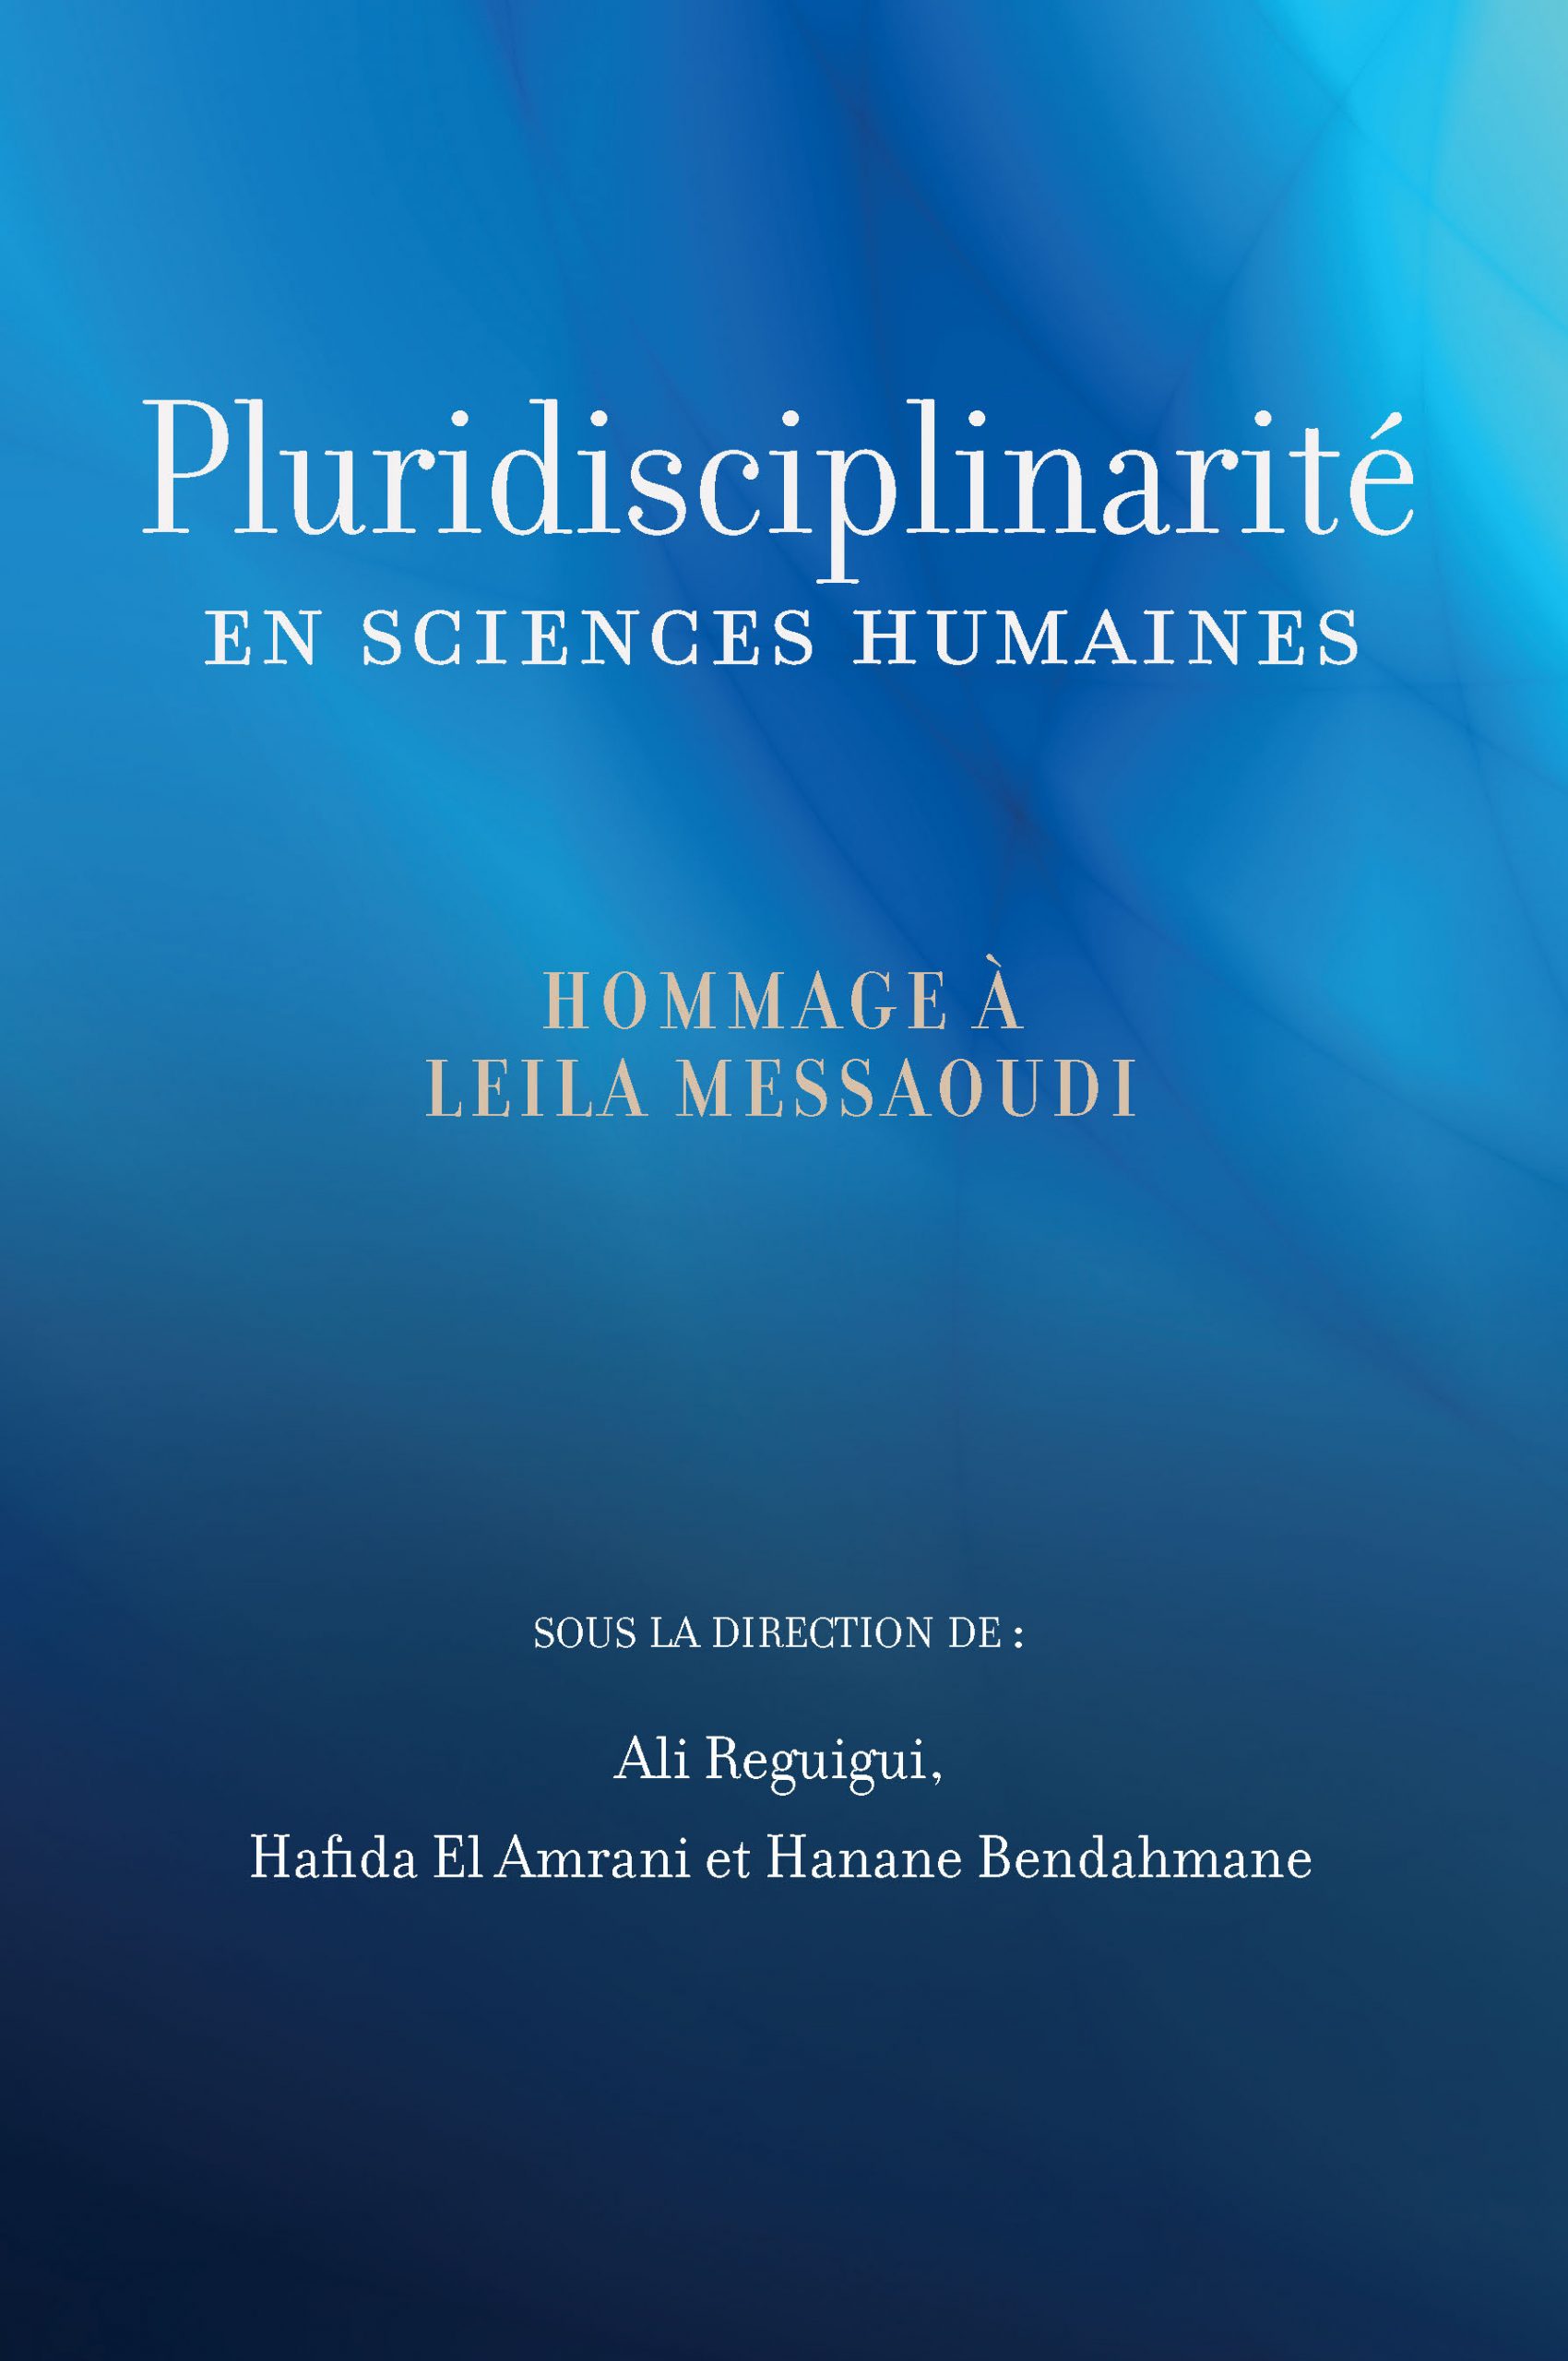 Imagen de portada del libro Pluridisciplinarité en sciences humaines